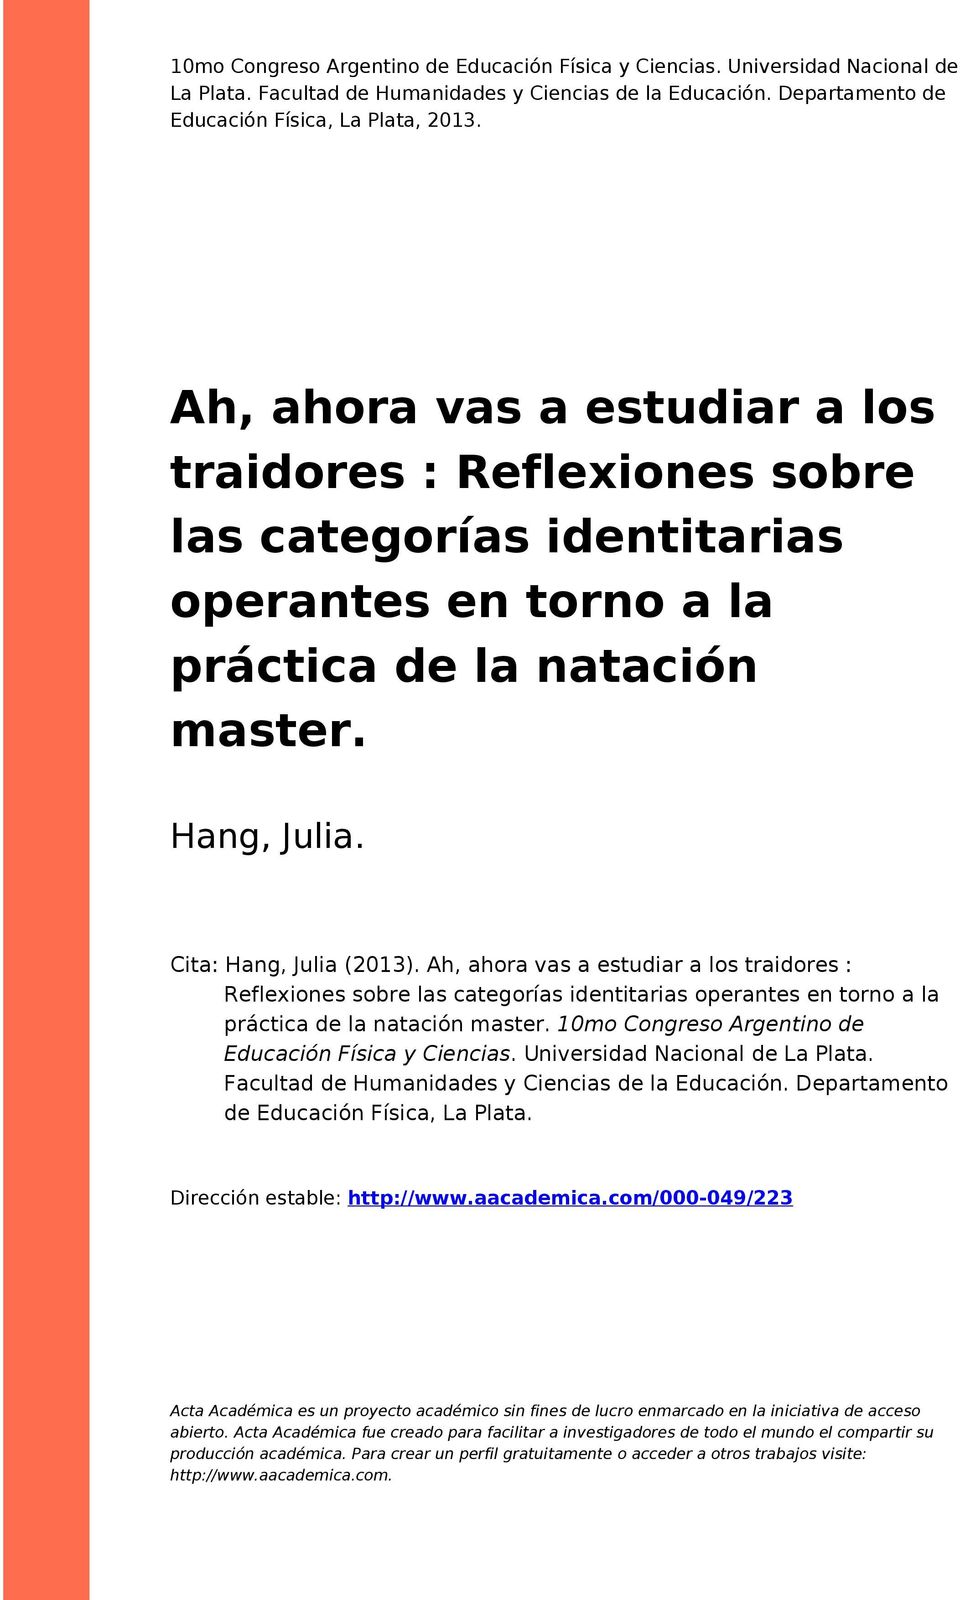 Ah, ahora vas a estudiar a los traidores : Reflexiones sobre las categorías identitarias operantes en torno a la práctica de la natación master. 10mo Congreso Argentino de Educación Física y Ciencias.